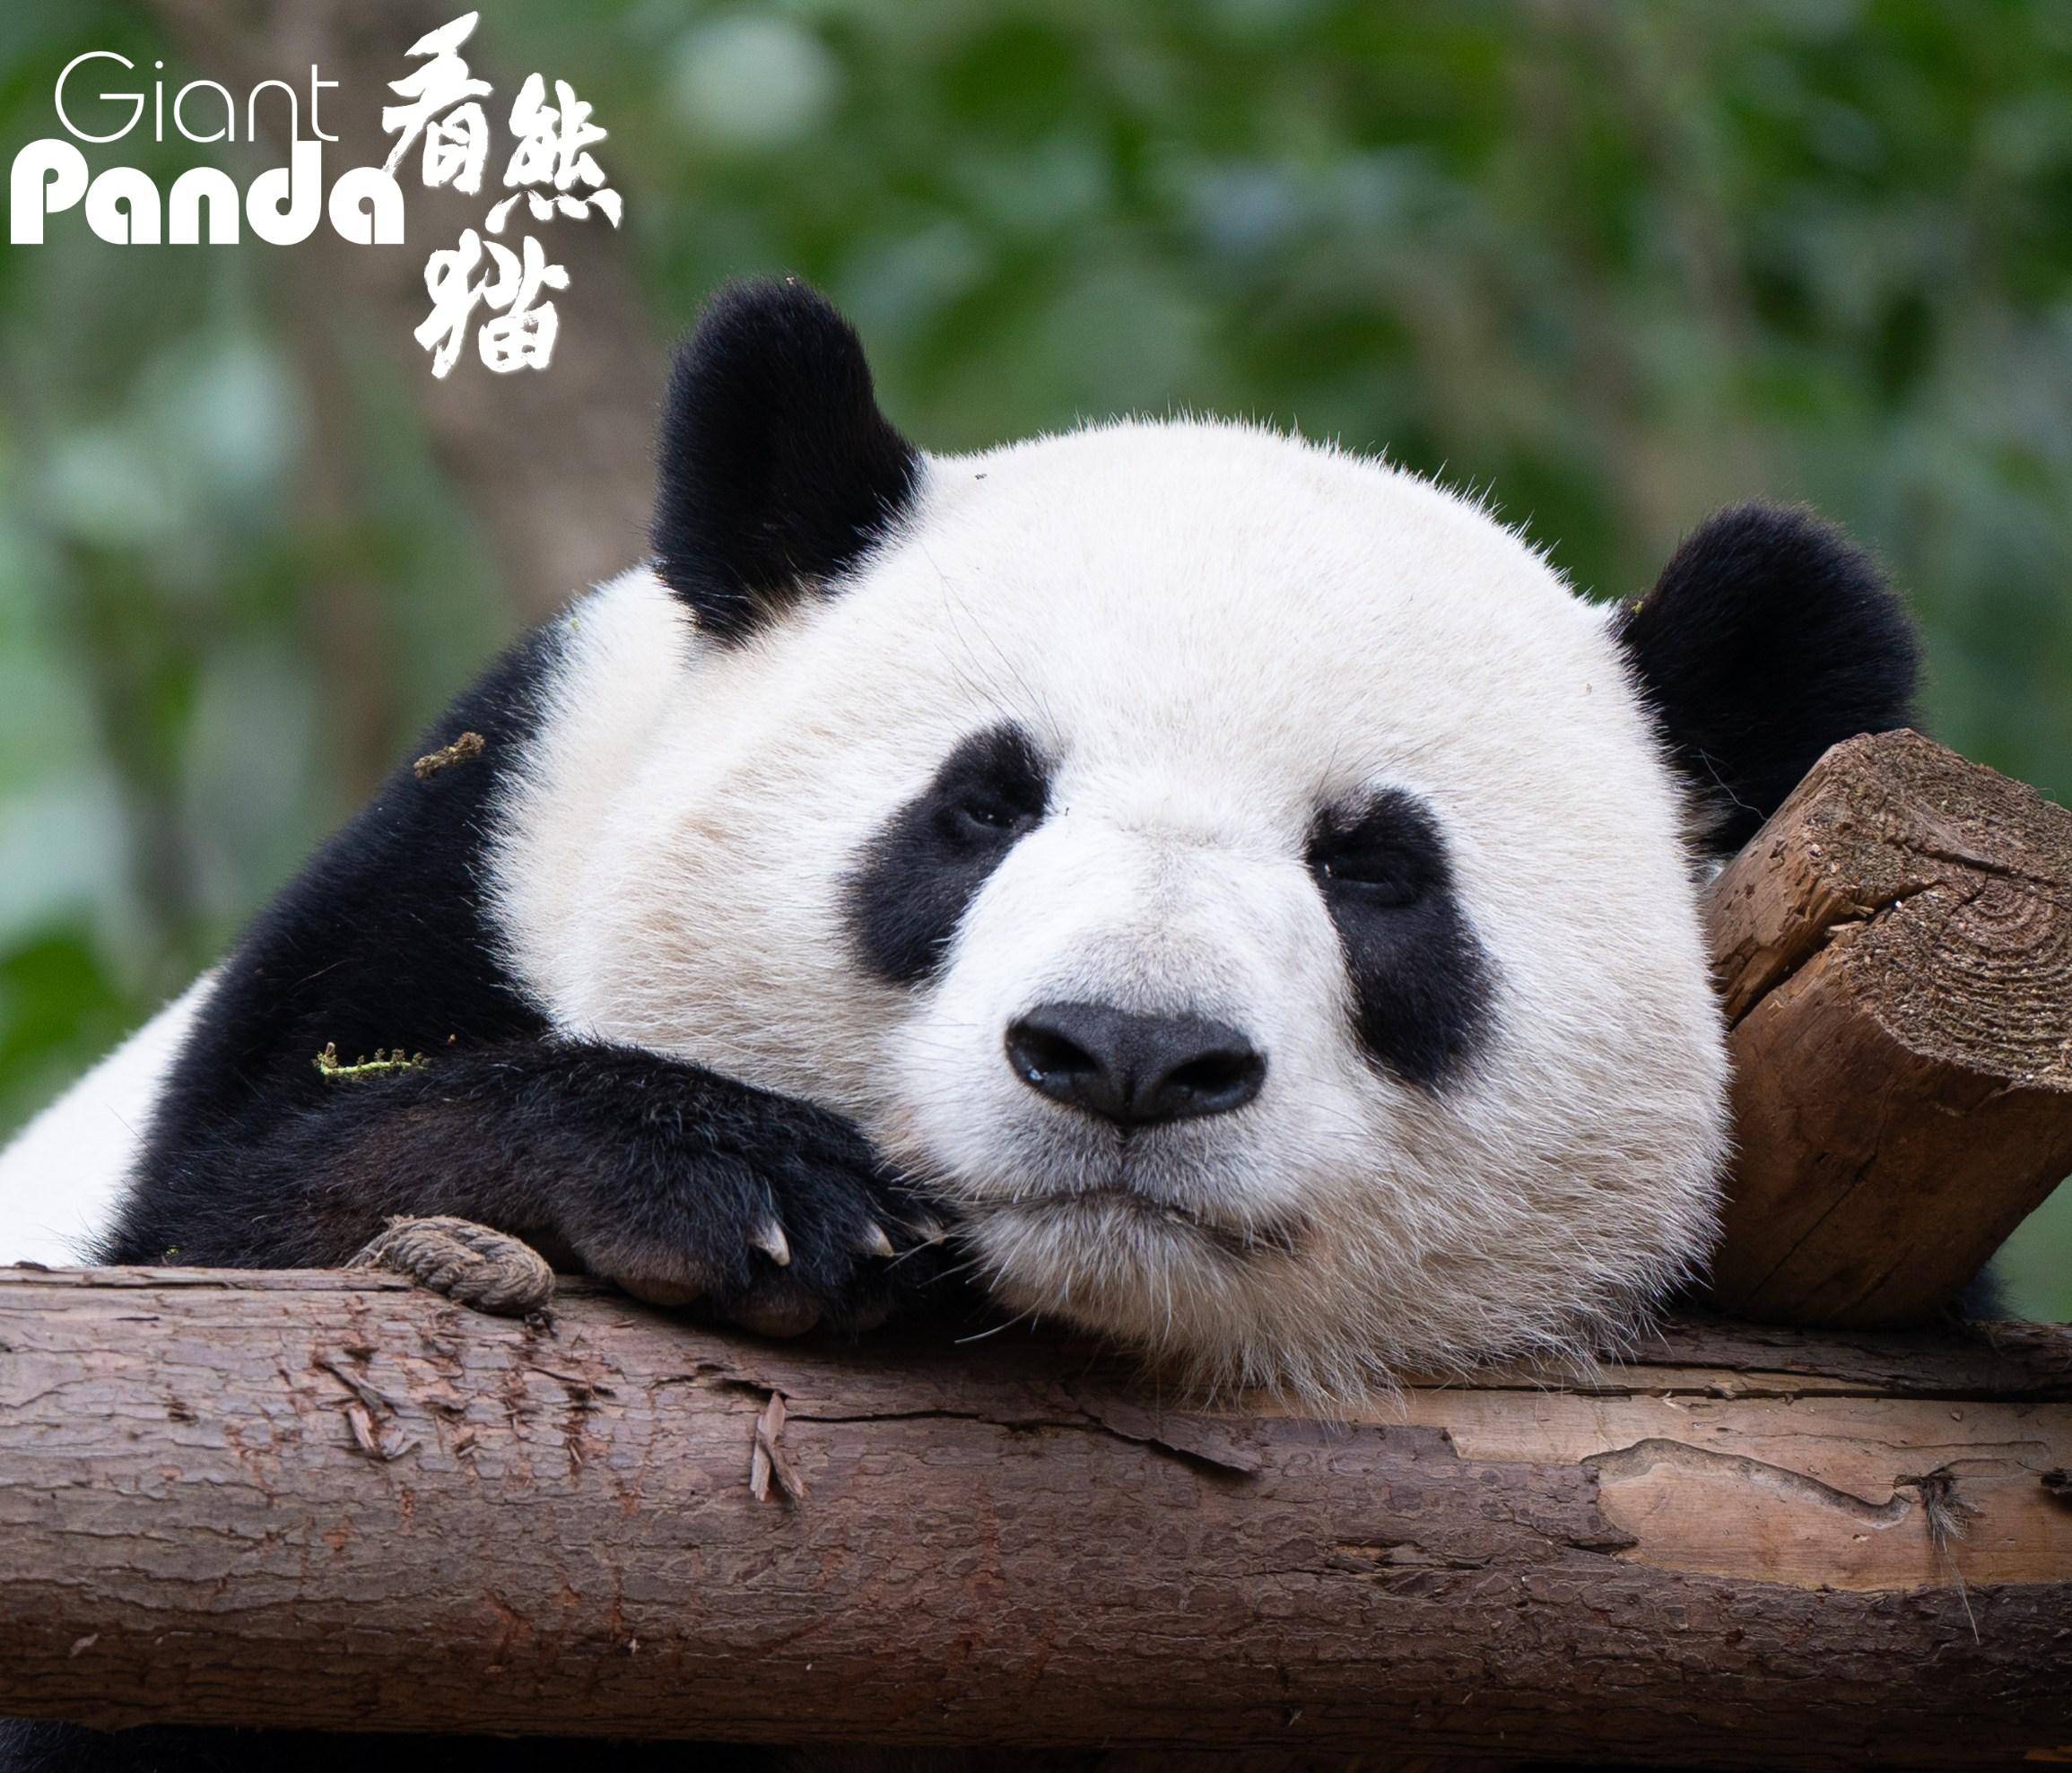 大熊猫迎迎去世图片